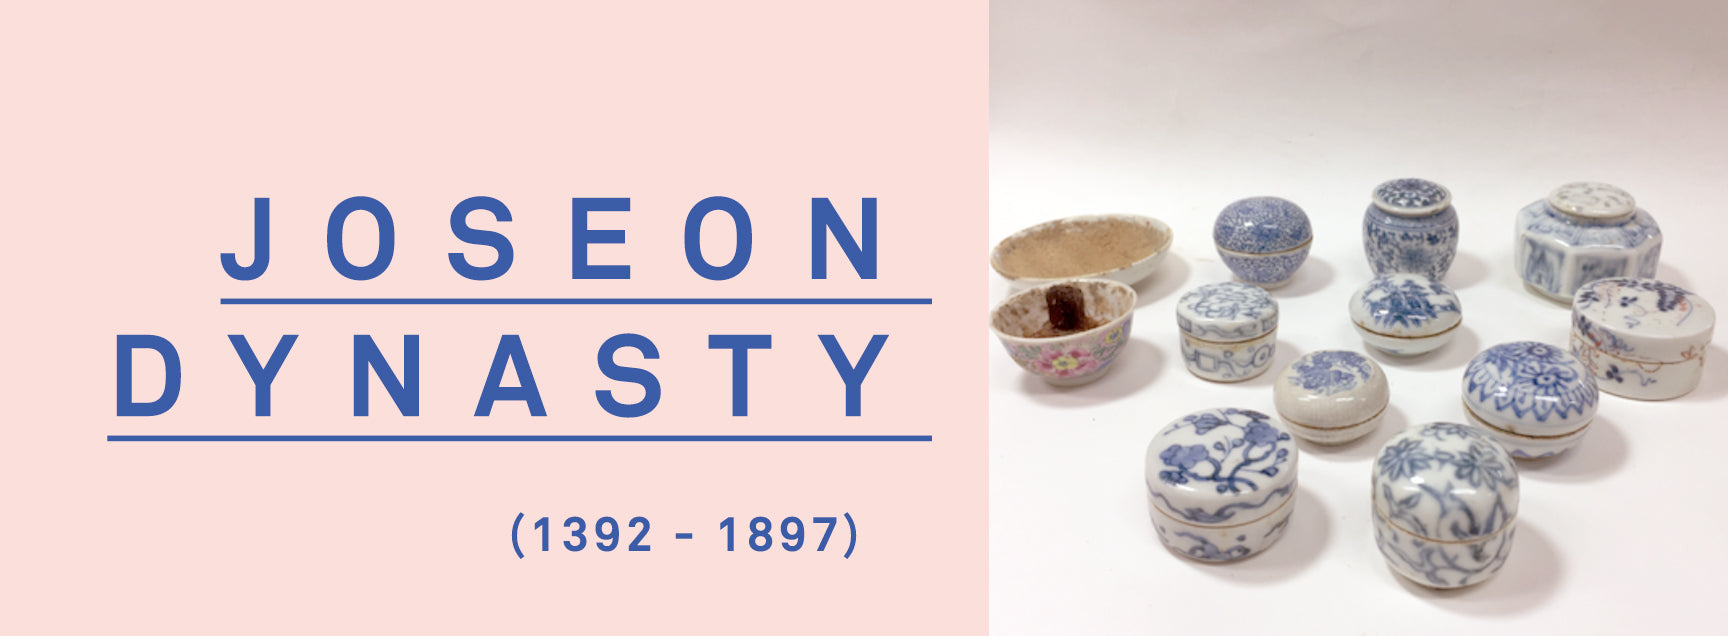 Ohlolly Blog The History of K-beauty Joseon Dynasty